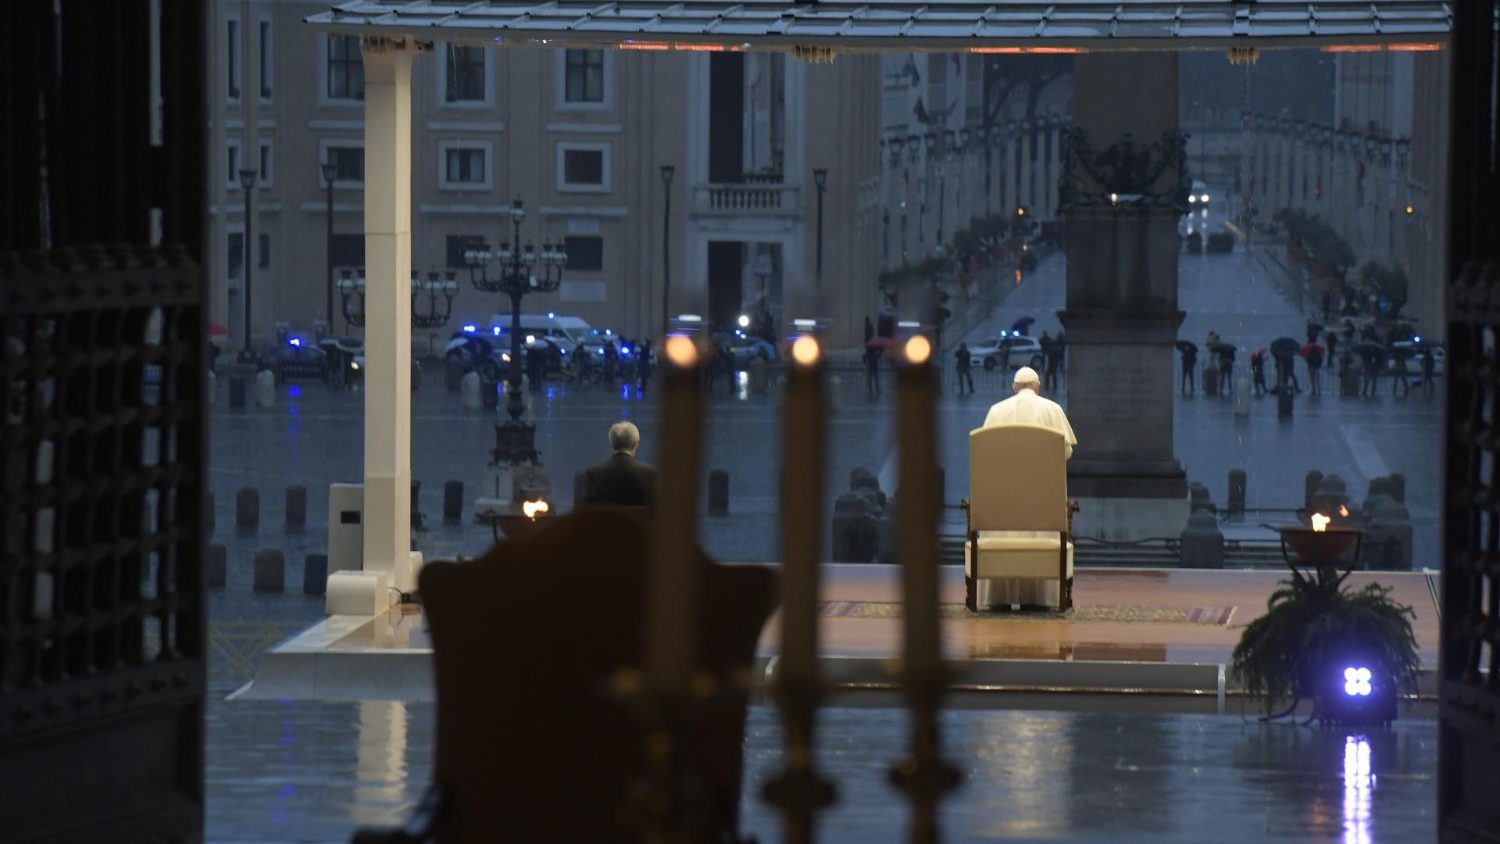 Franziskus Betet Auf Leerem Petersplatz Fur Ende Der Corona Pandemie